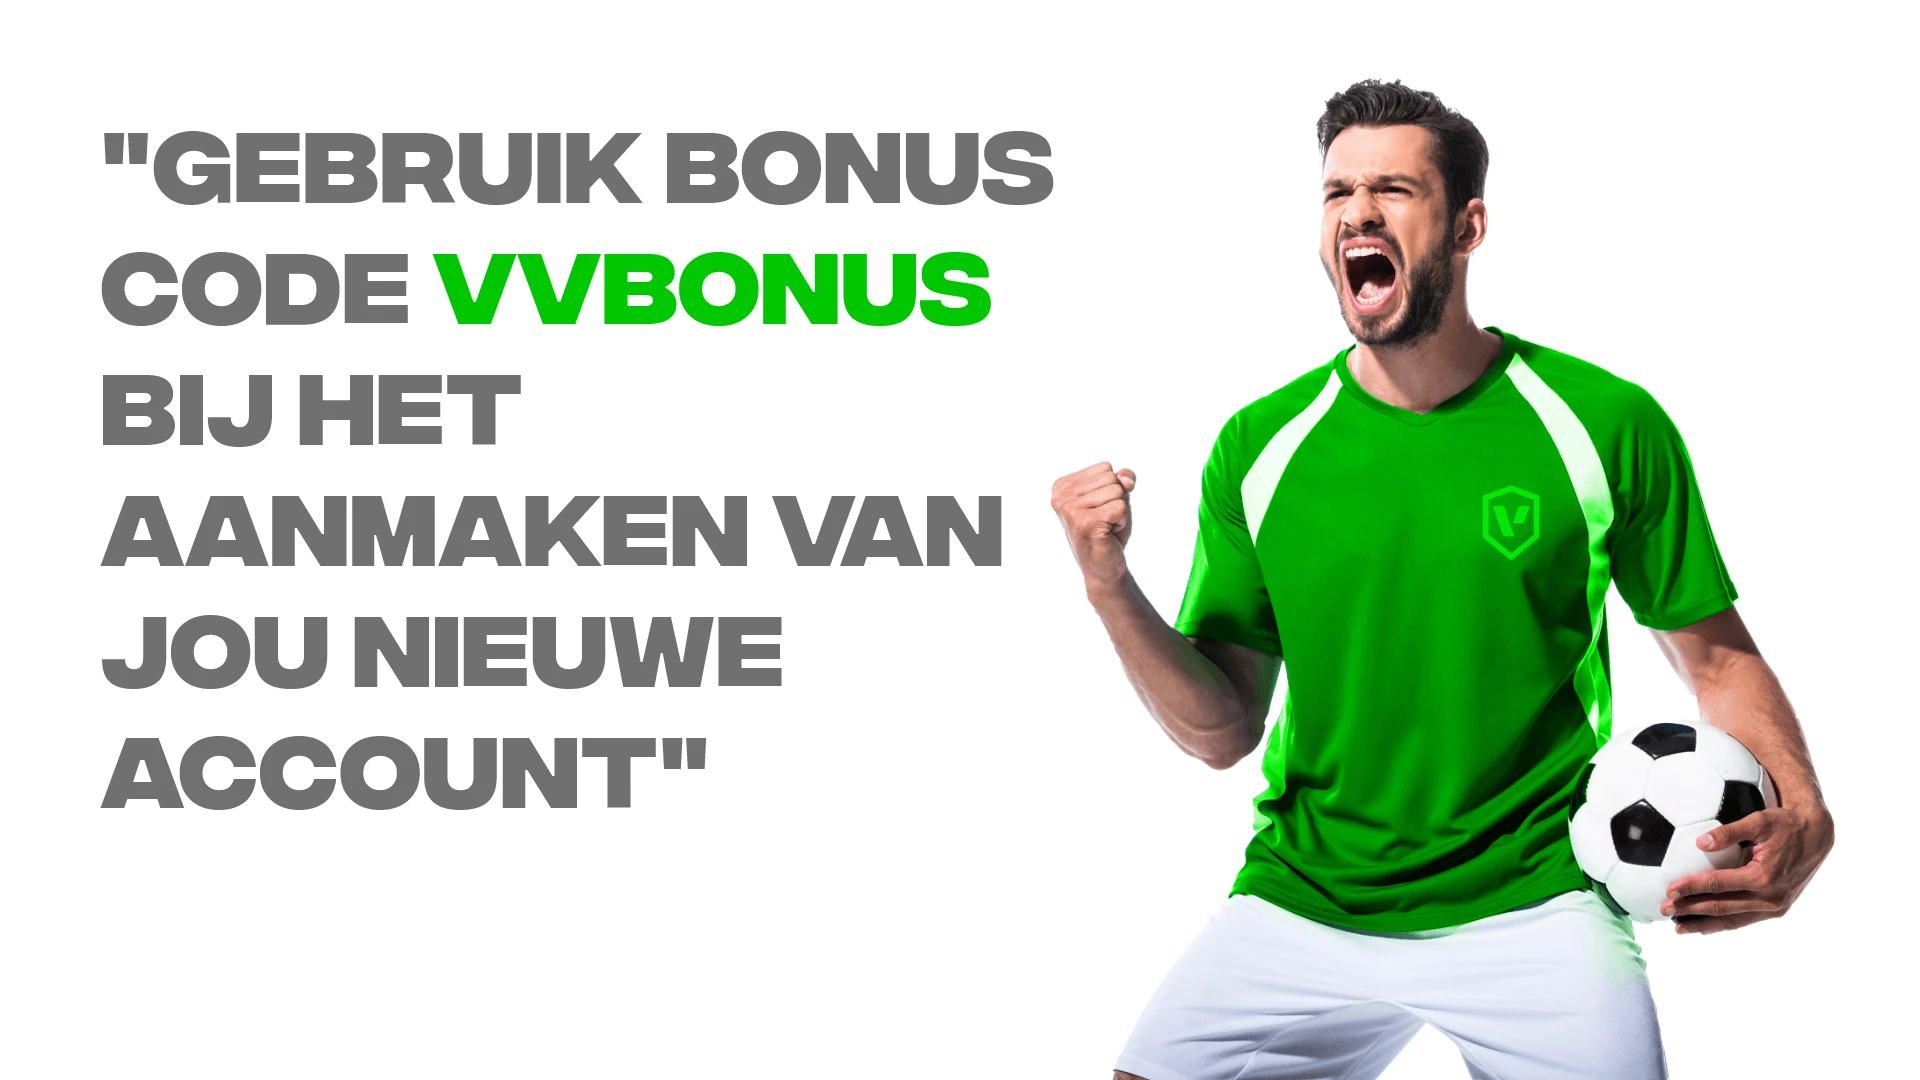 bonus code gebruiken voor een nieuws bookmaker account VVbonus